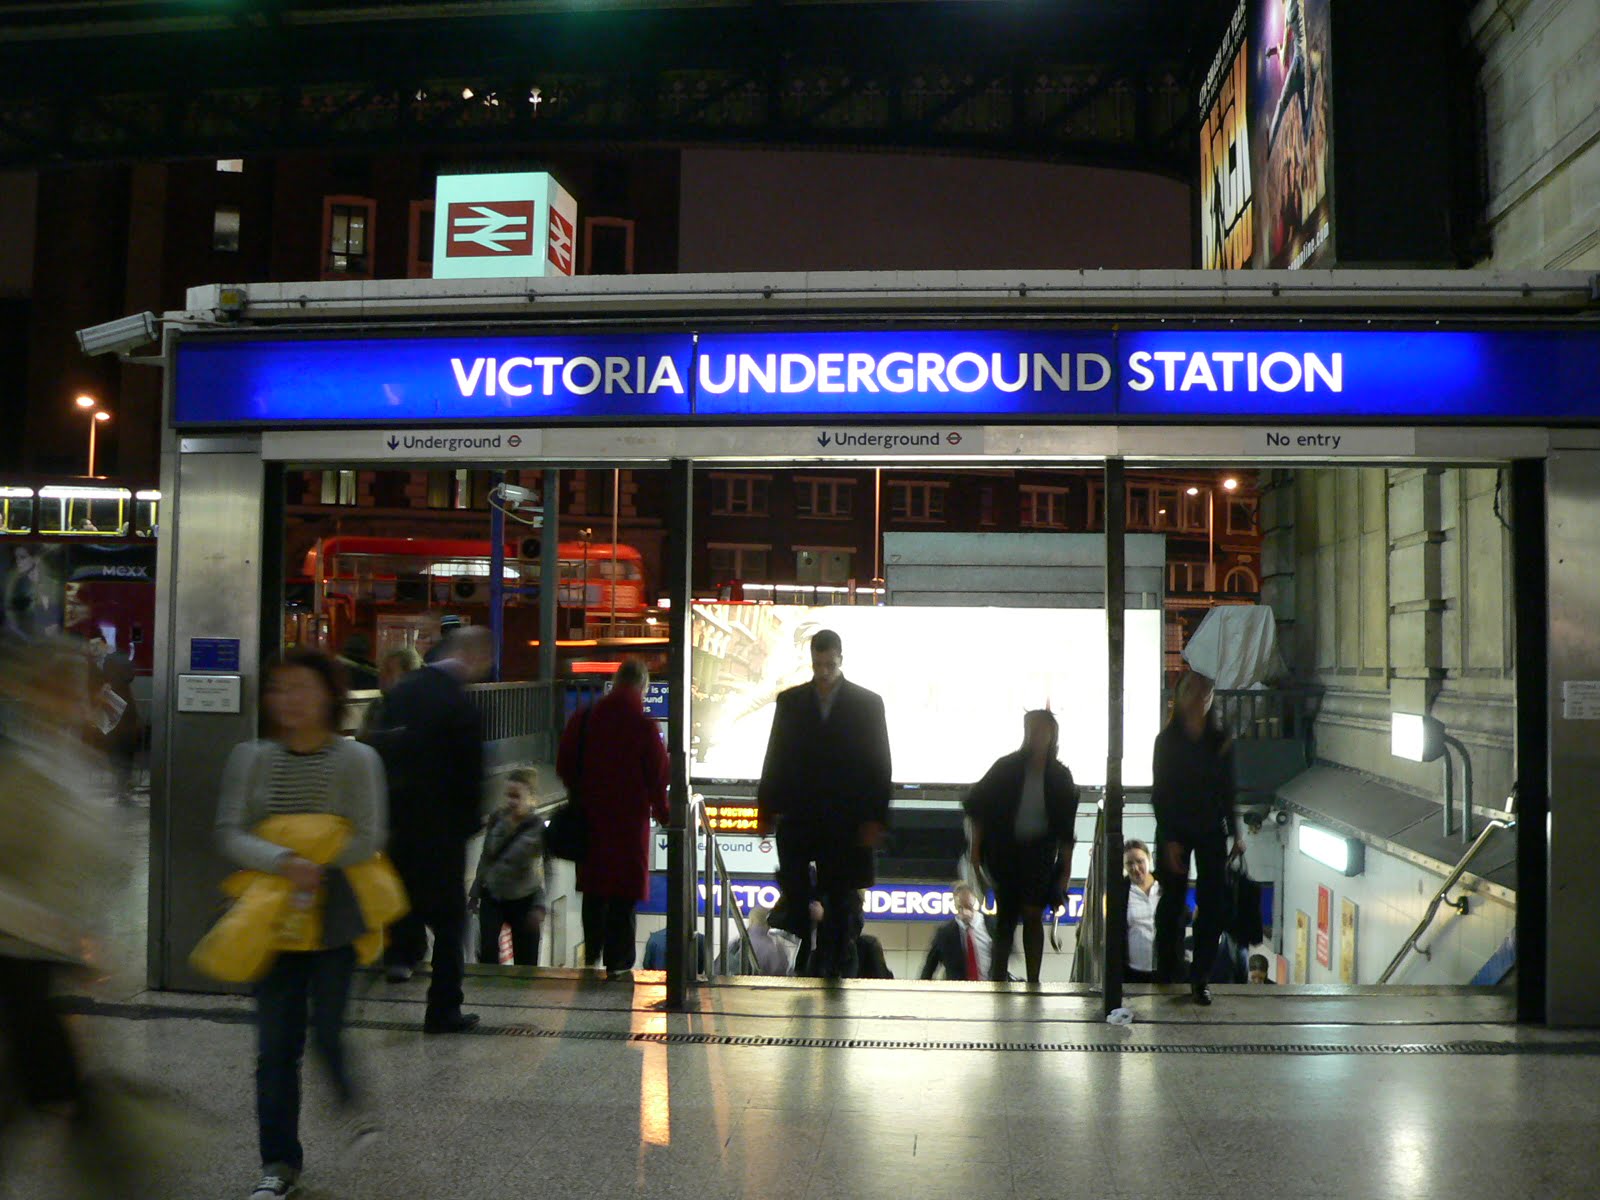 Victoria Underground Station Advertising